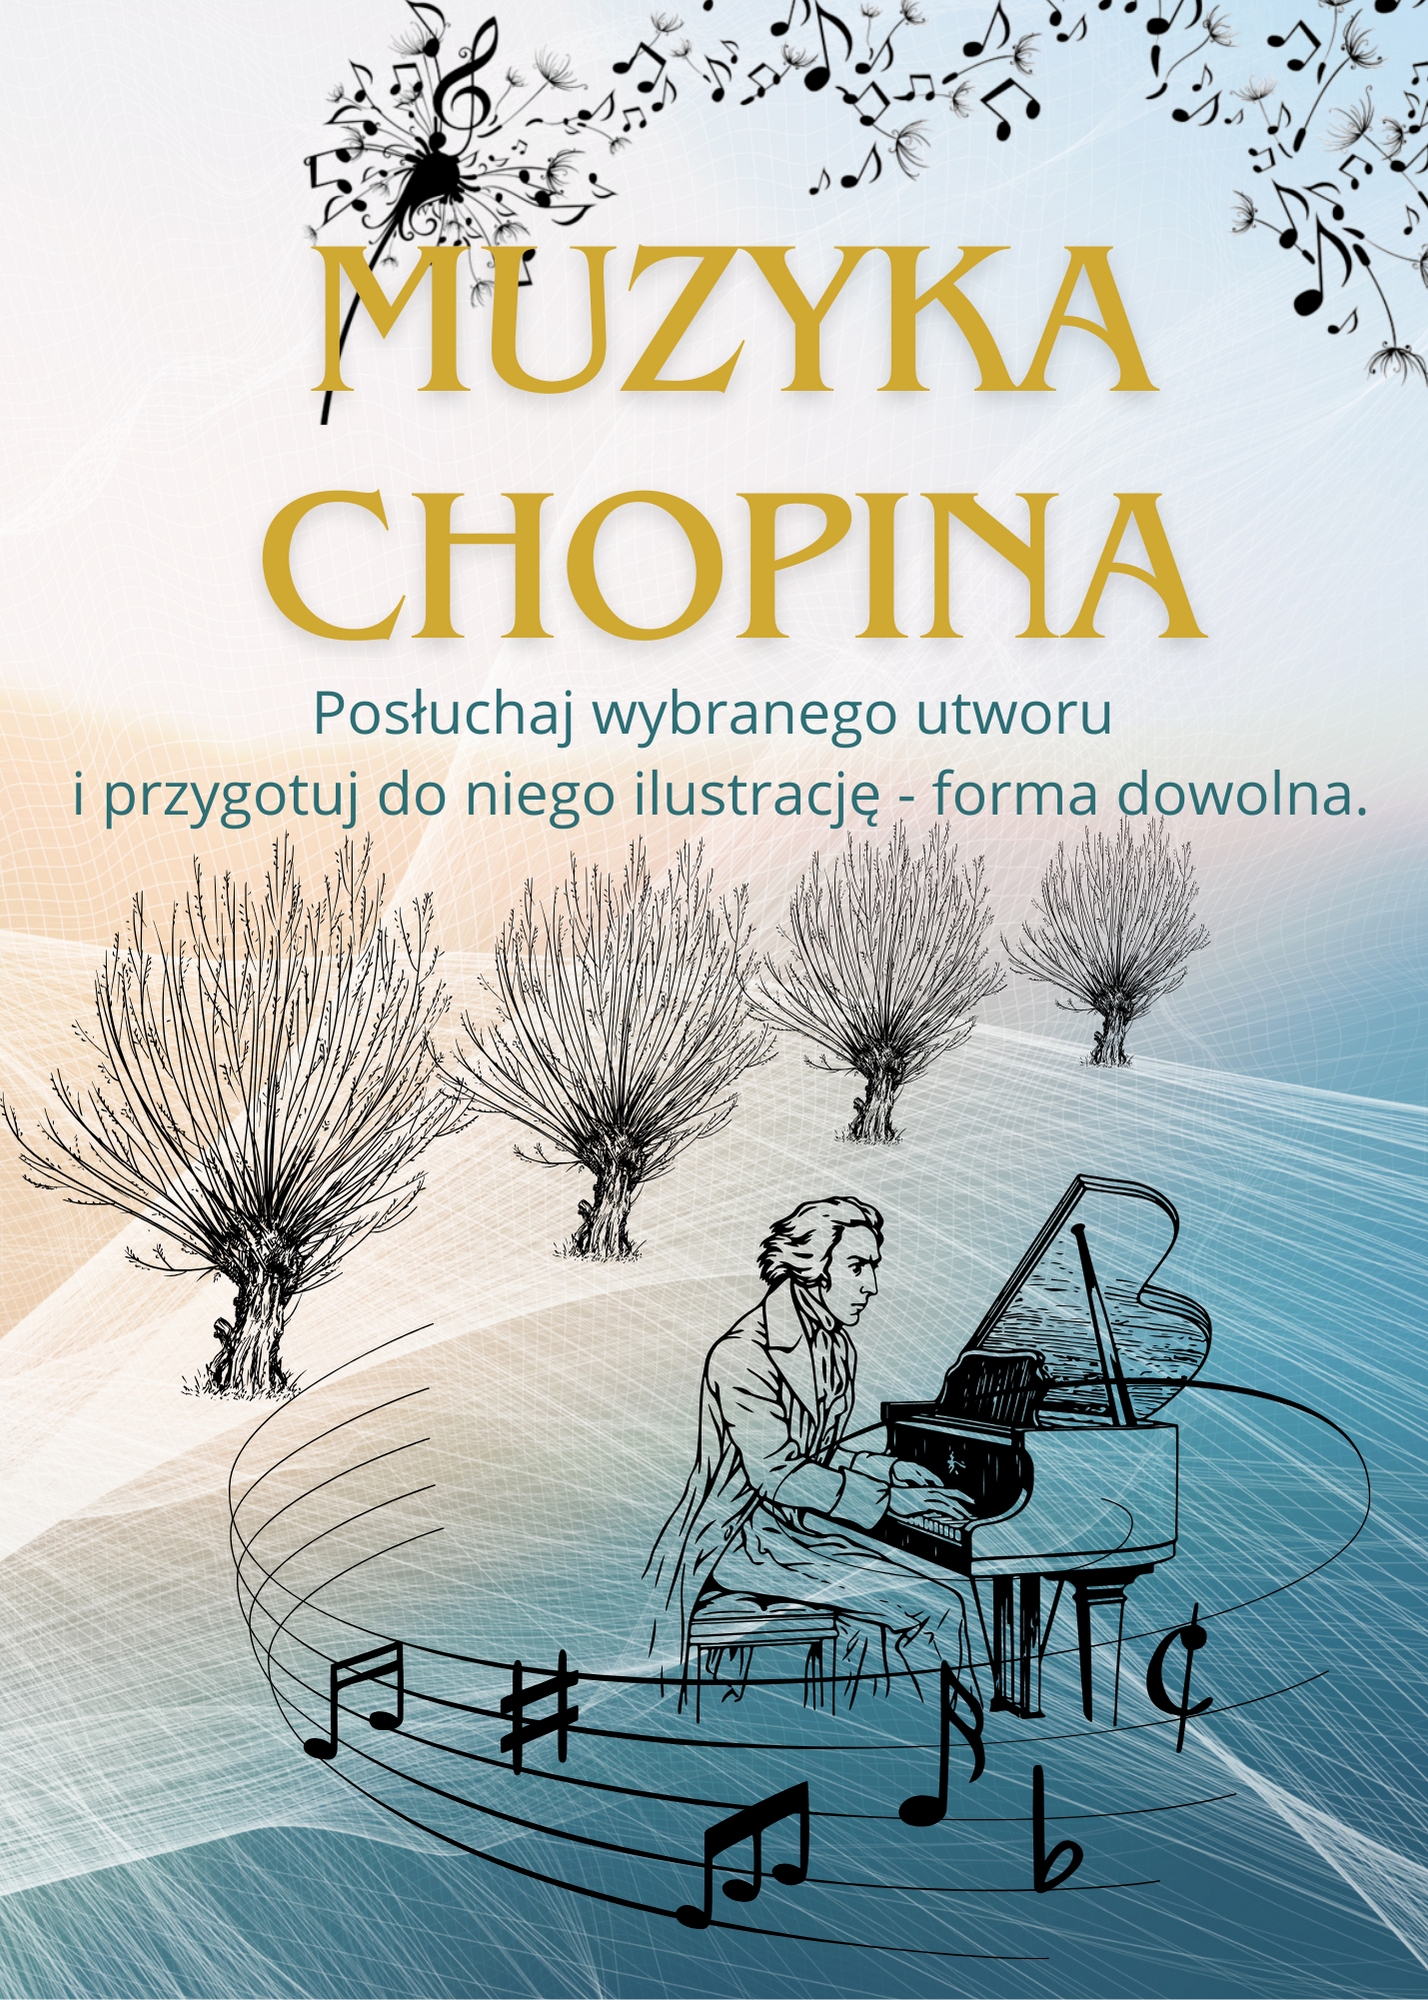 Plakat opisujący przebieg akcji z wizerunkiem Fryderyka Chopina grającego na fortepianie